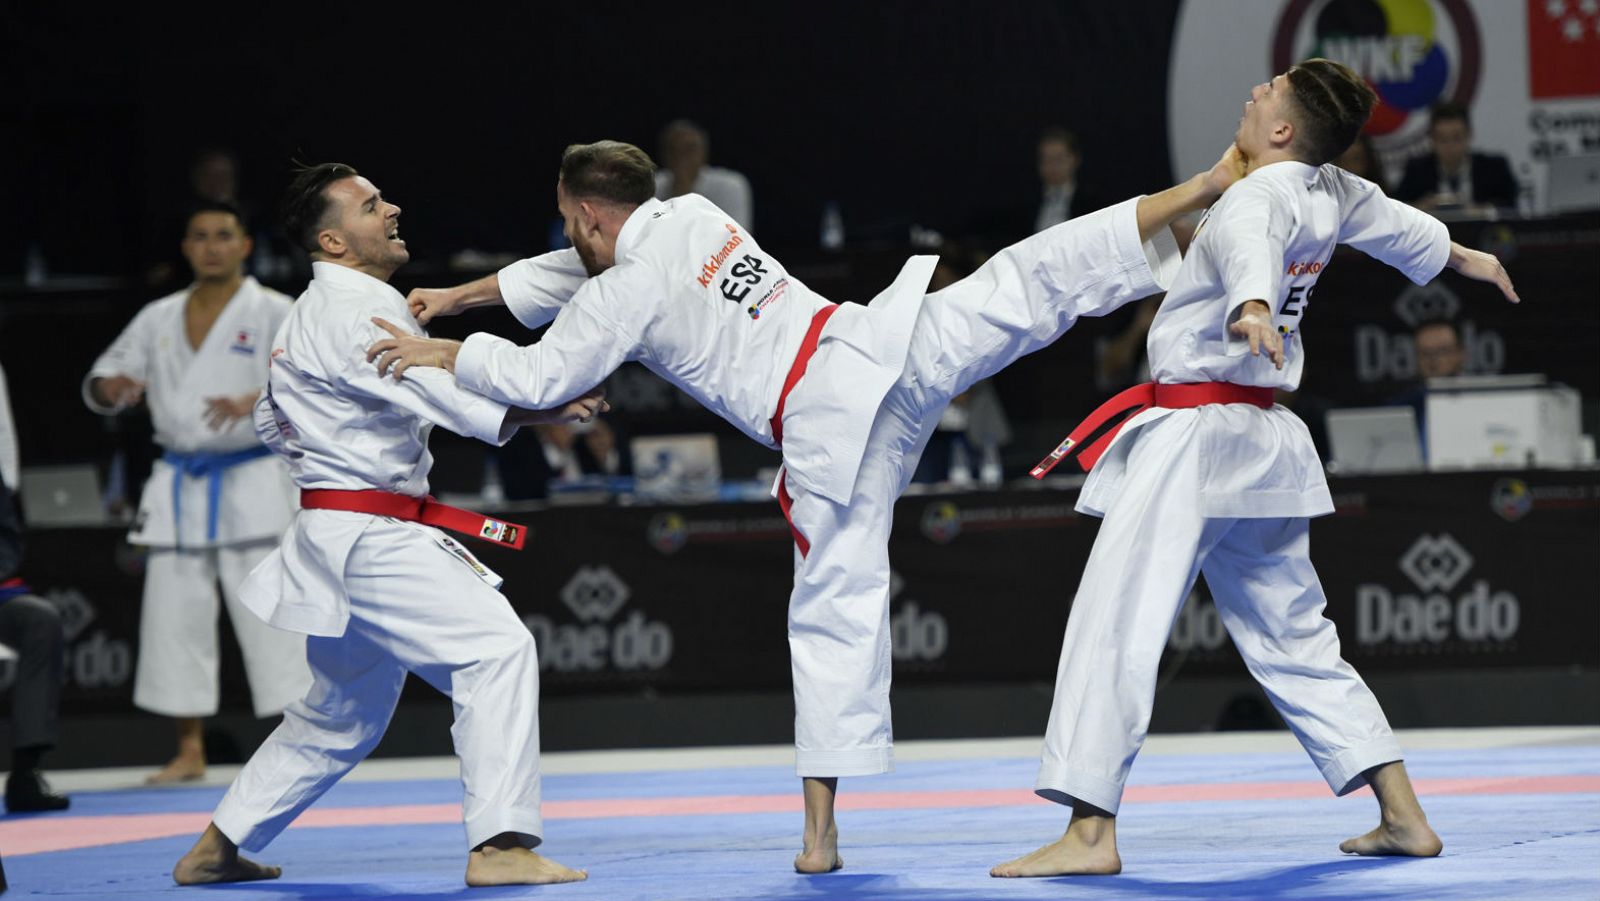 Tres karatekas en el tatami durante el Mundial de Kárate celebrado en Madrid